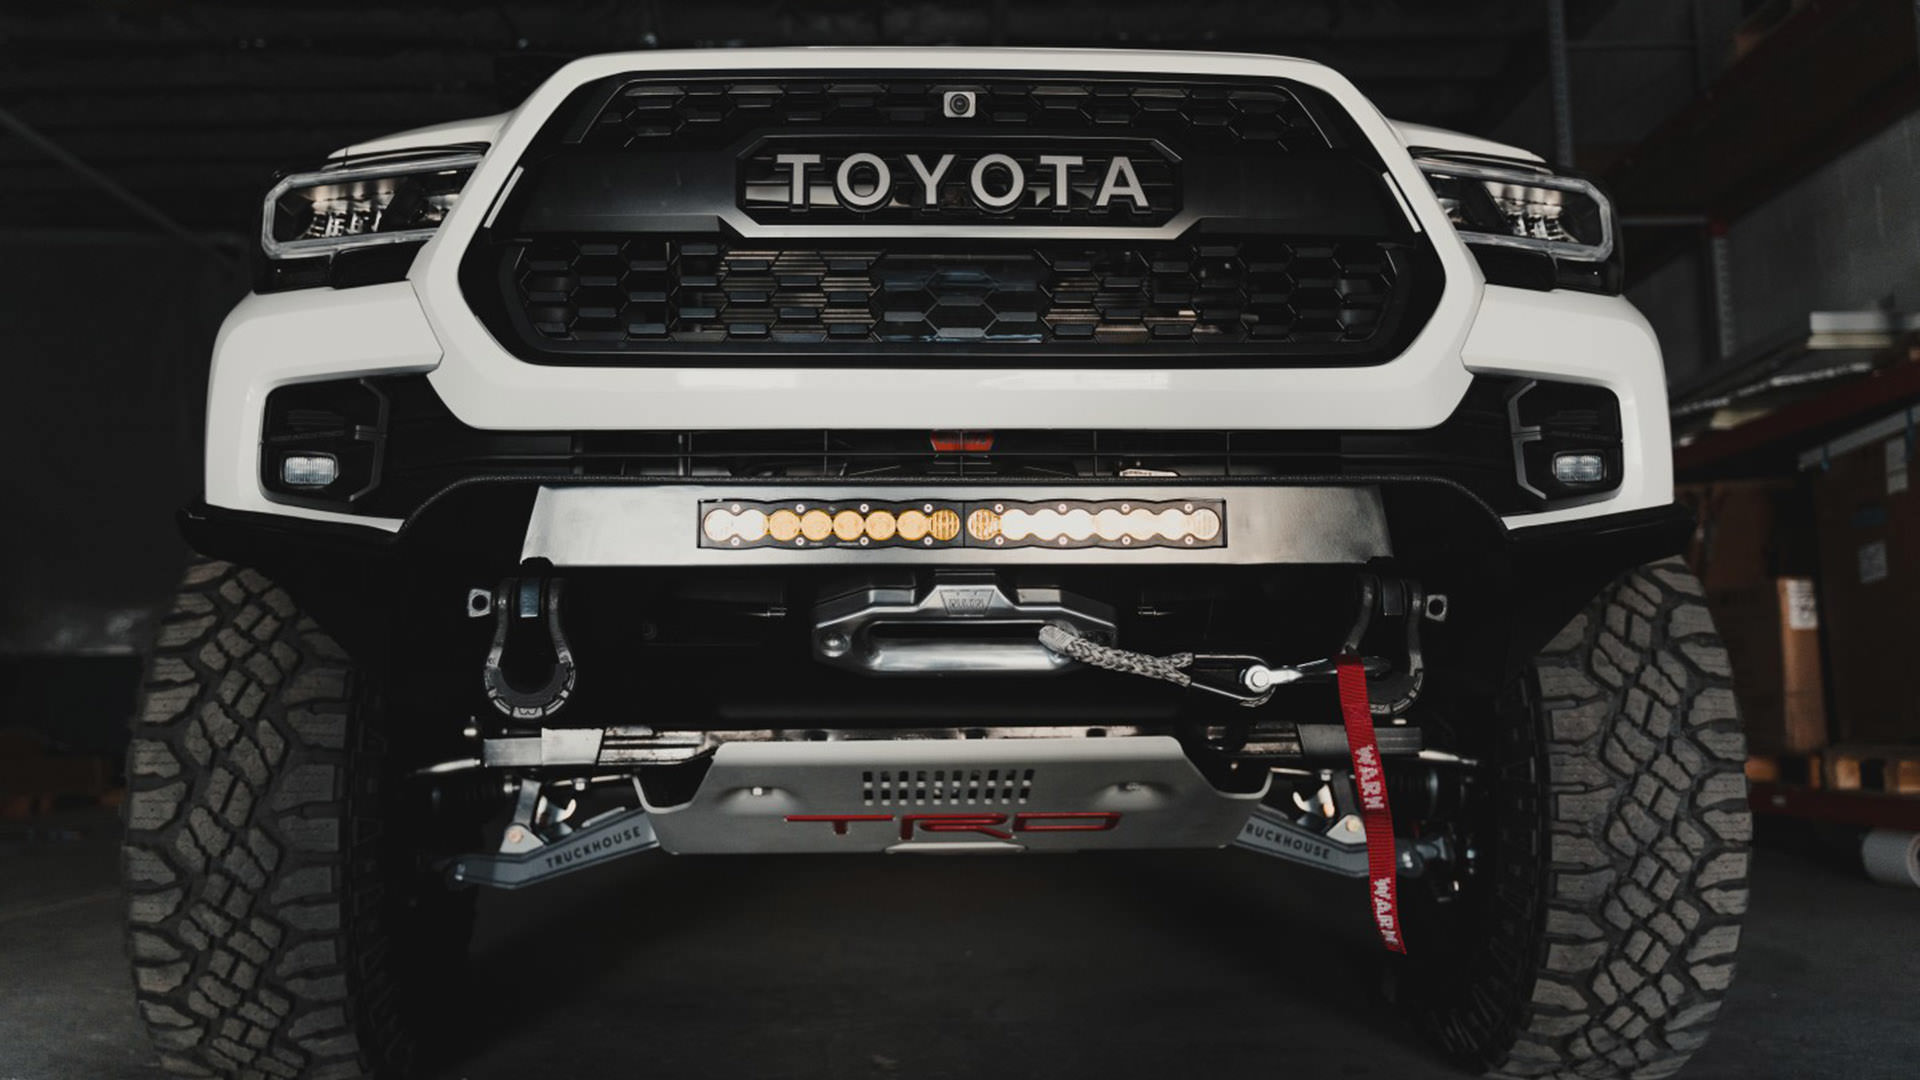 نمای پایین خودروی تفریحی مبتنی بر وانت پیکاپ تویوتا تاکوما / Toyota Tacoma 4x4 RV سفید رنگ